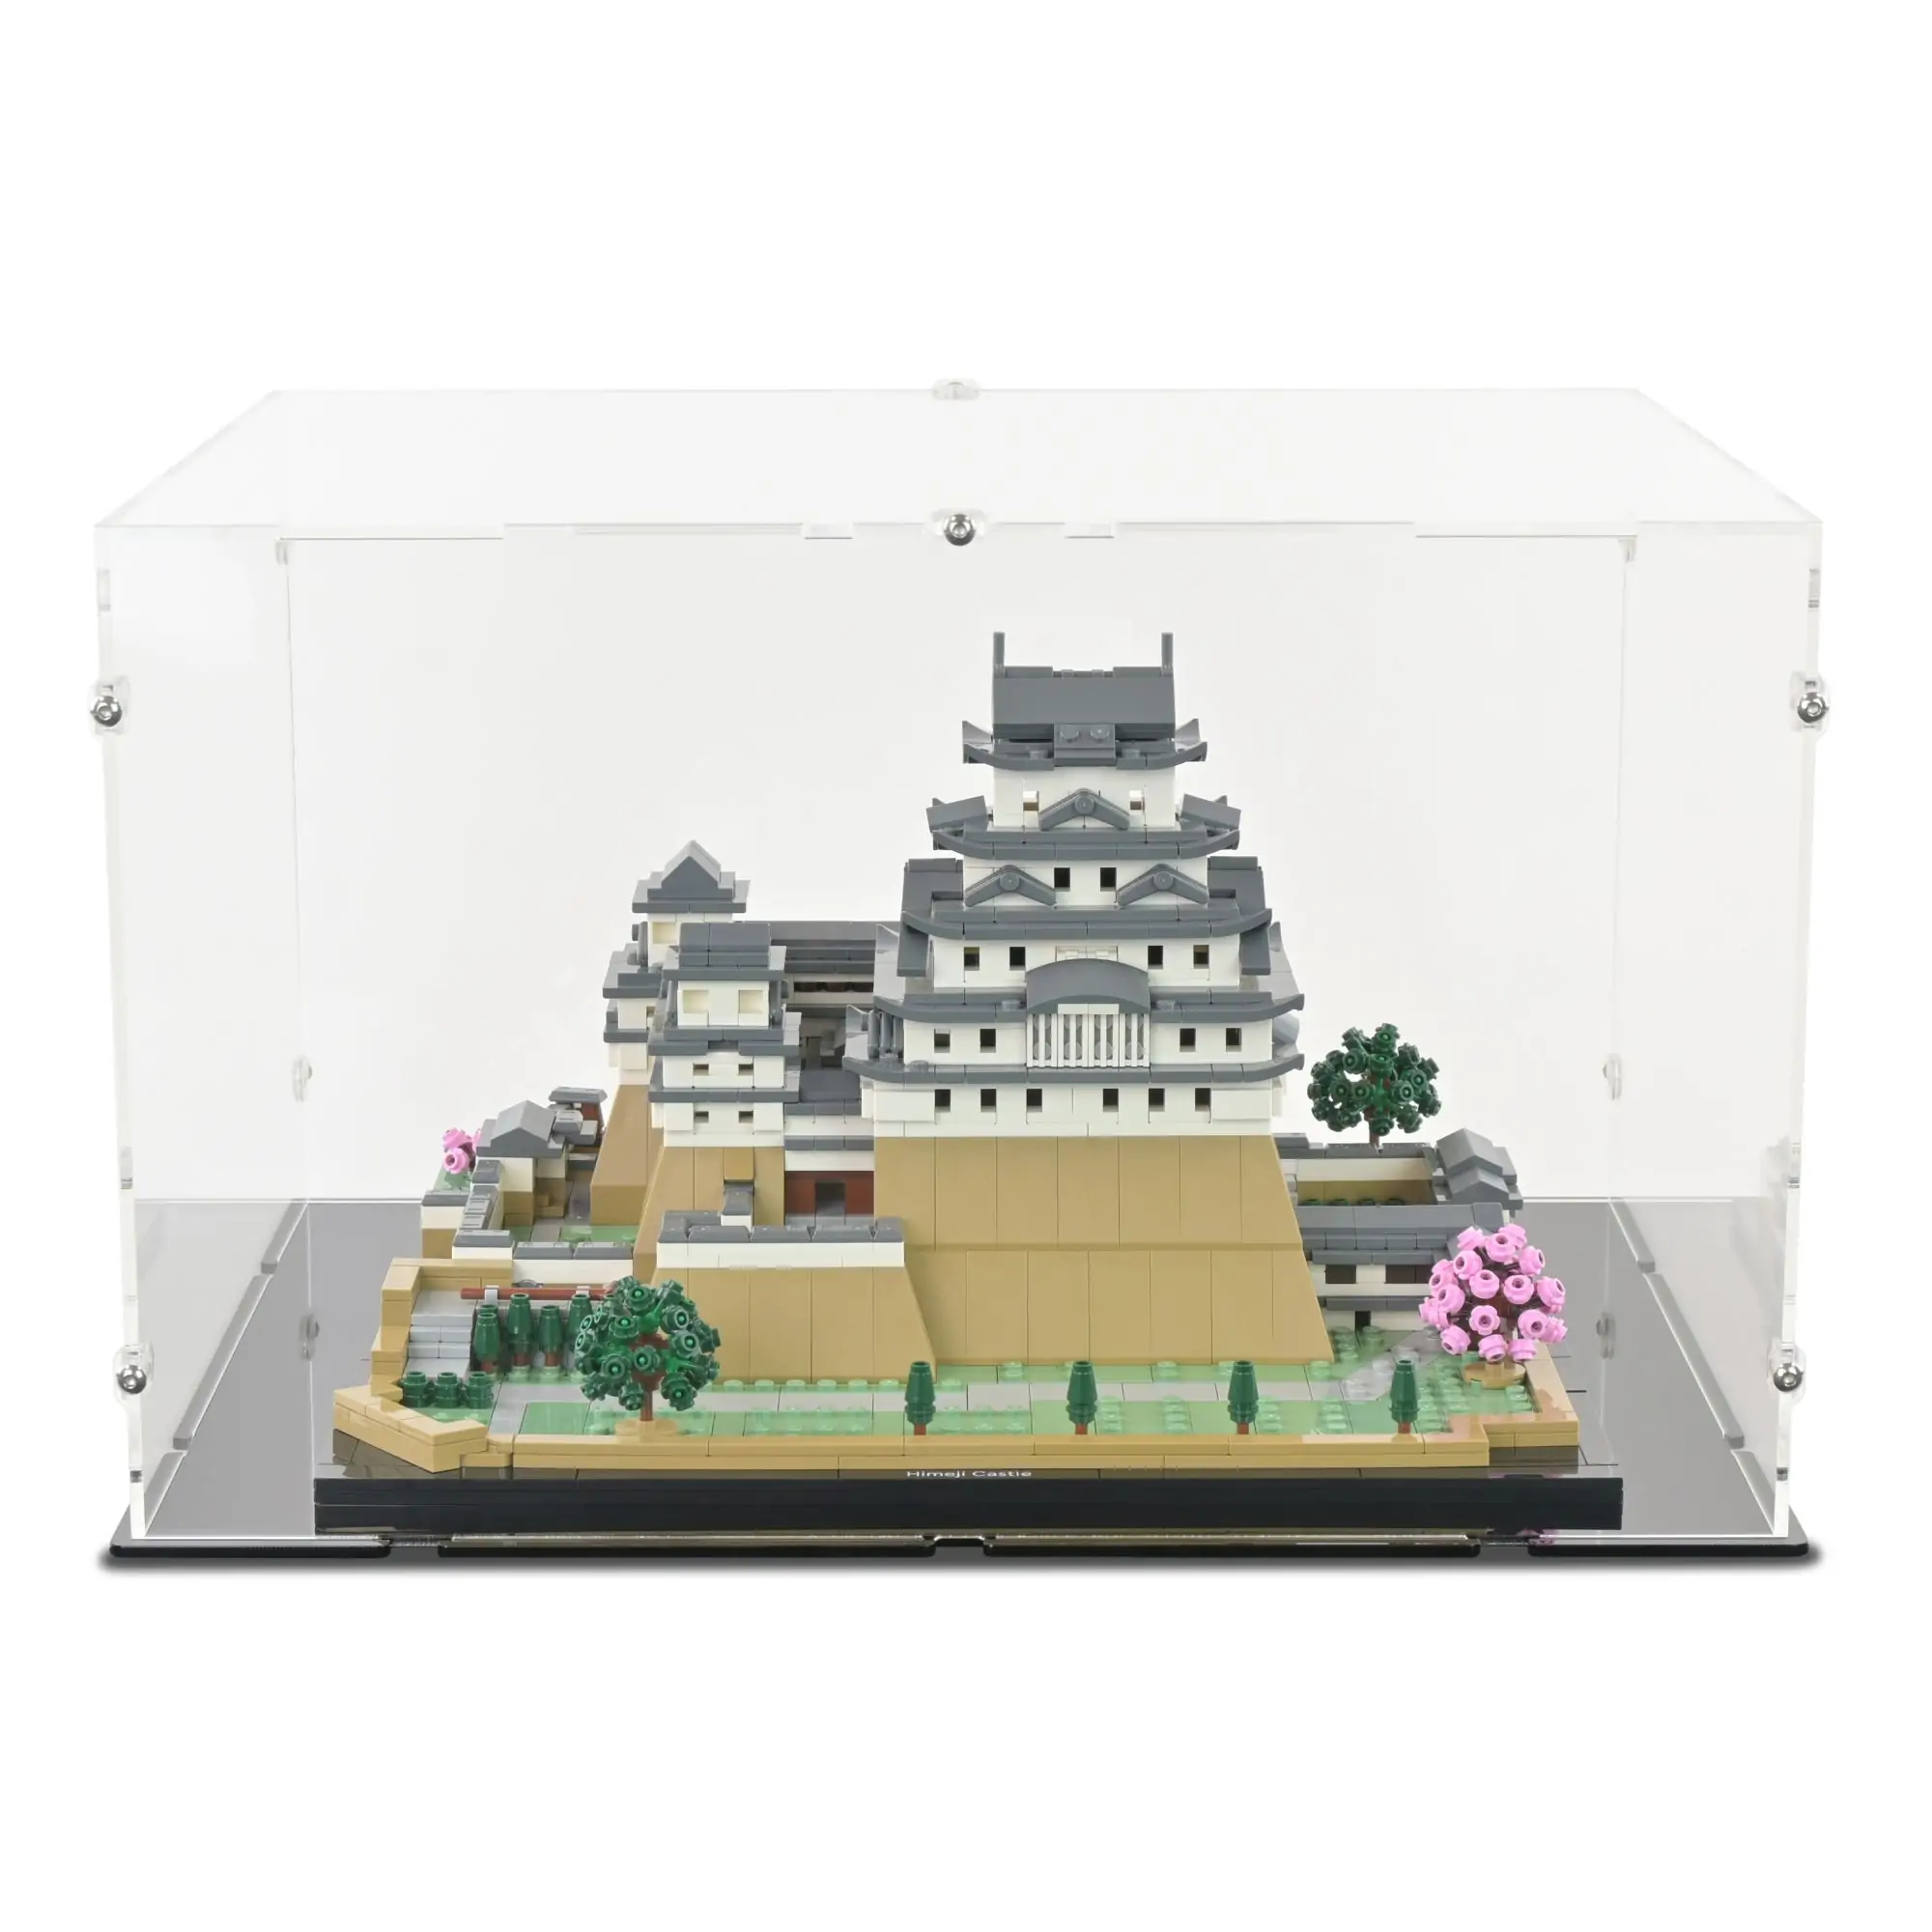 https://www.idisplayit.co.uk/images/detailed/89/lego-architecture-himeji-castle-display-case-02-1.webp